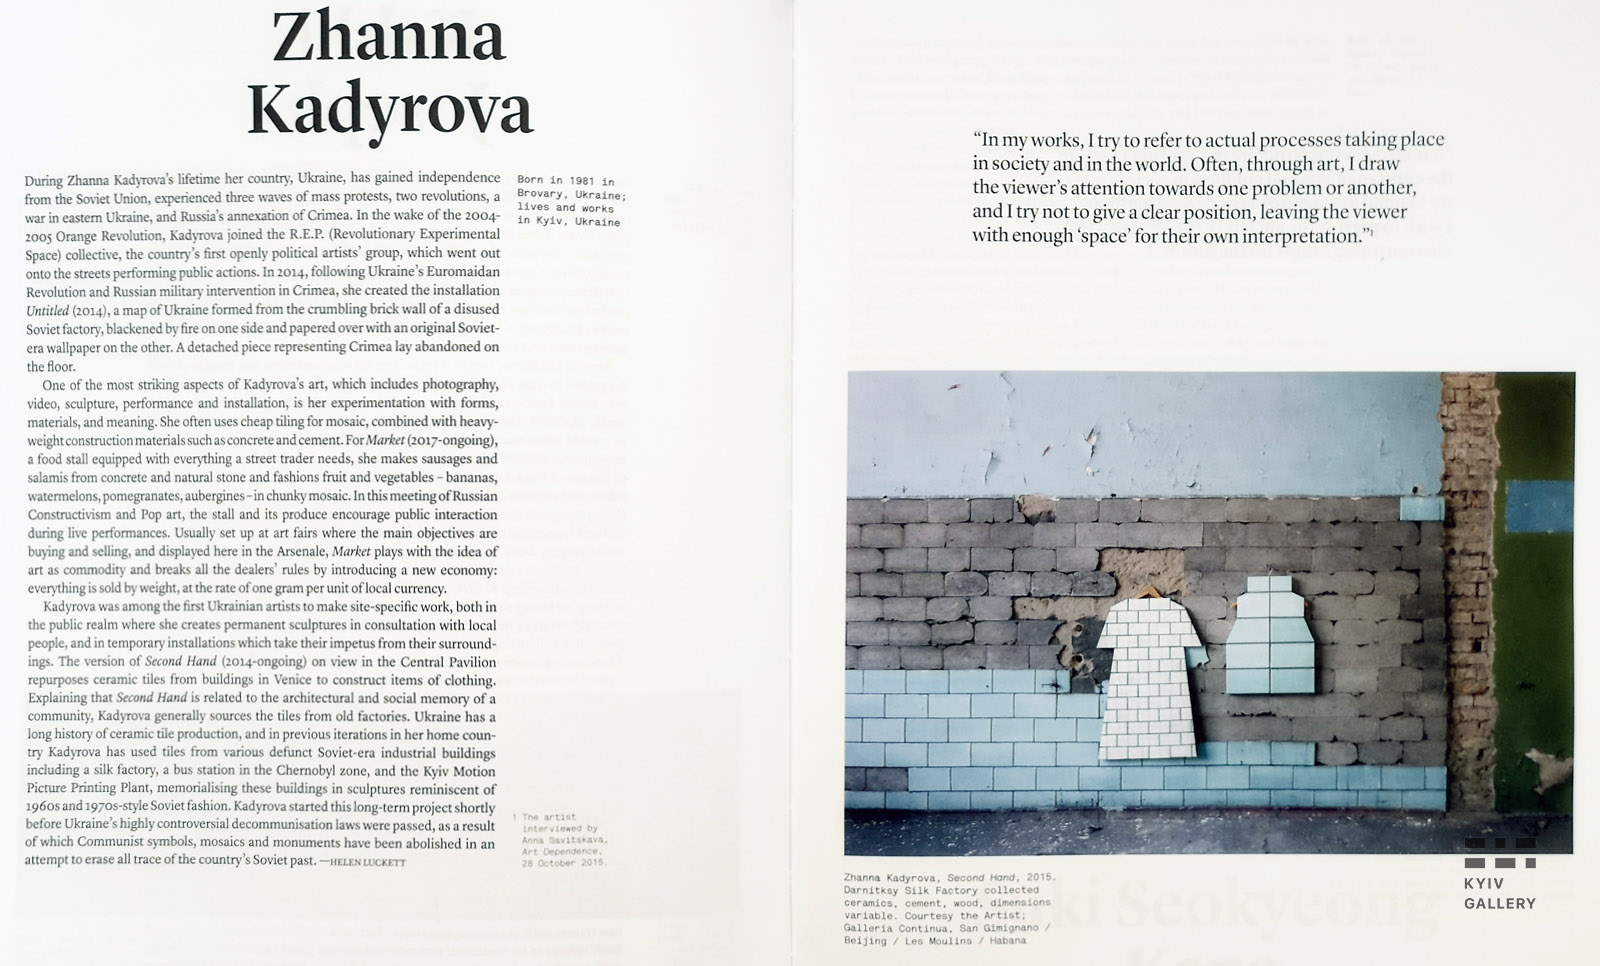 Жанна Кадырова на 58-й биеннале в Венеции в 2019 году. Официальный каталог биеннале, страницы 274-275